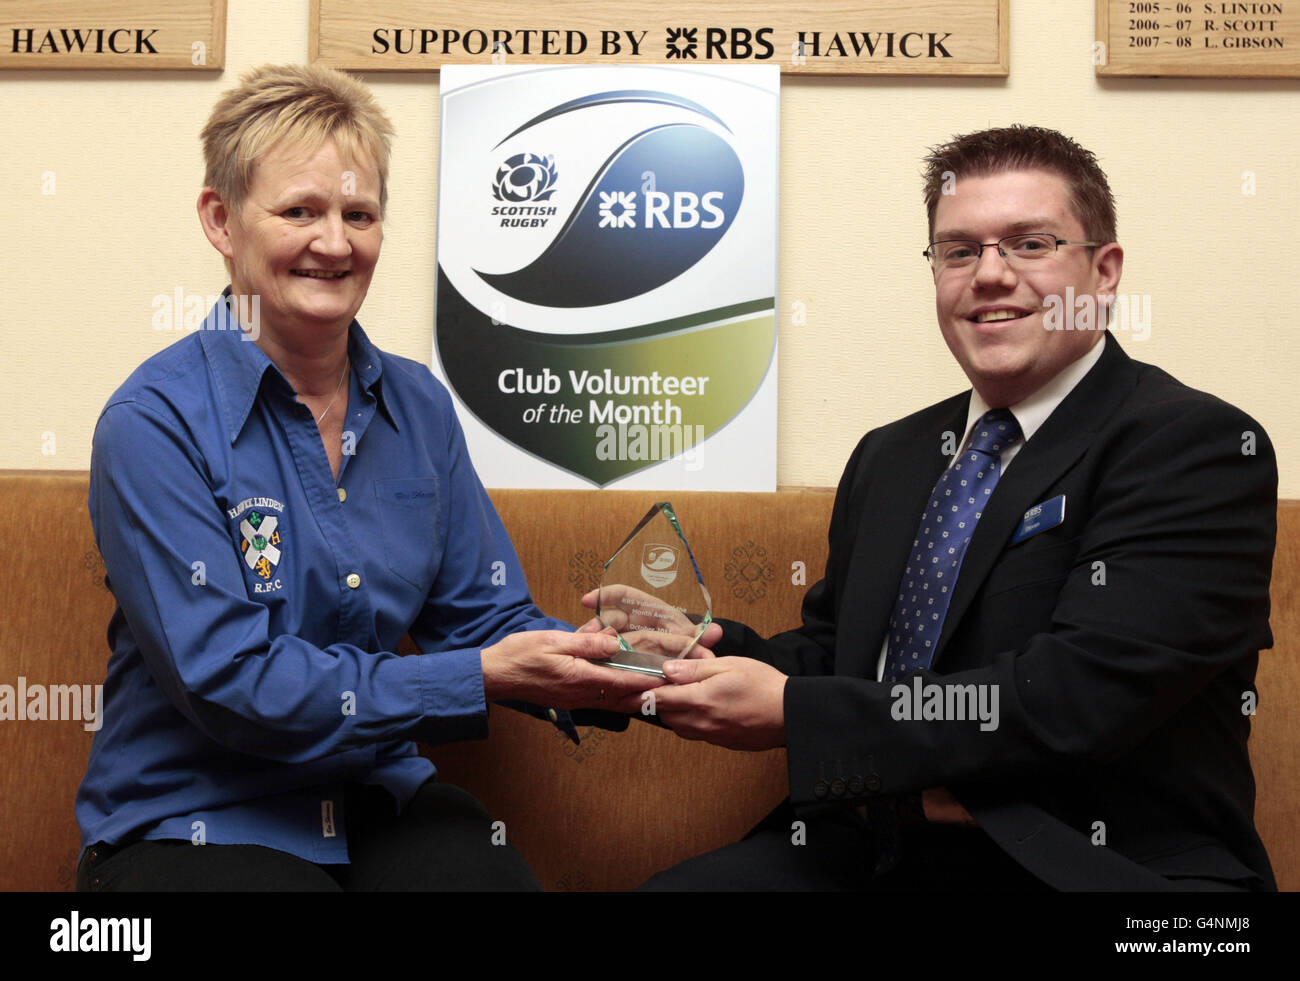 Moira Black mit ihrem Volunteer of the Month Award, der von Steven Hawkness während der RBS Volunteer Award Präsentation im Hawick Linden RFC, Hawick, verliehen wurde. Stockfoto